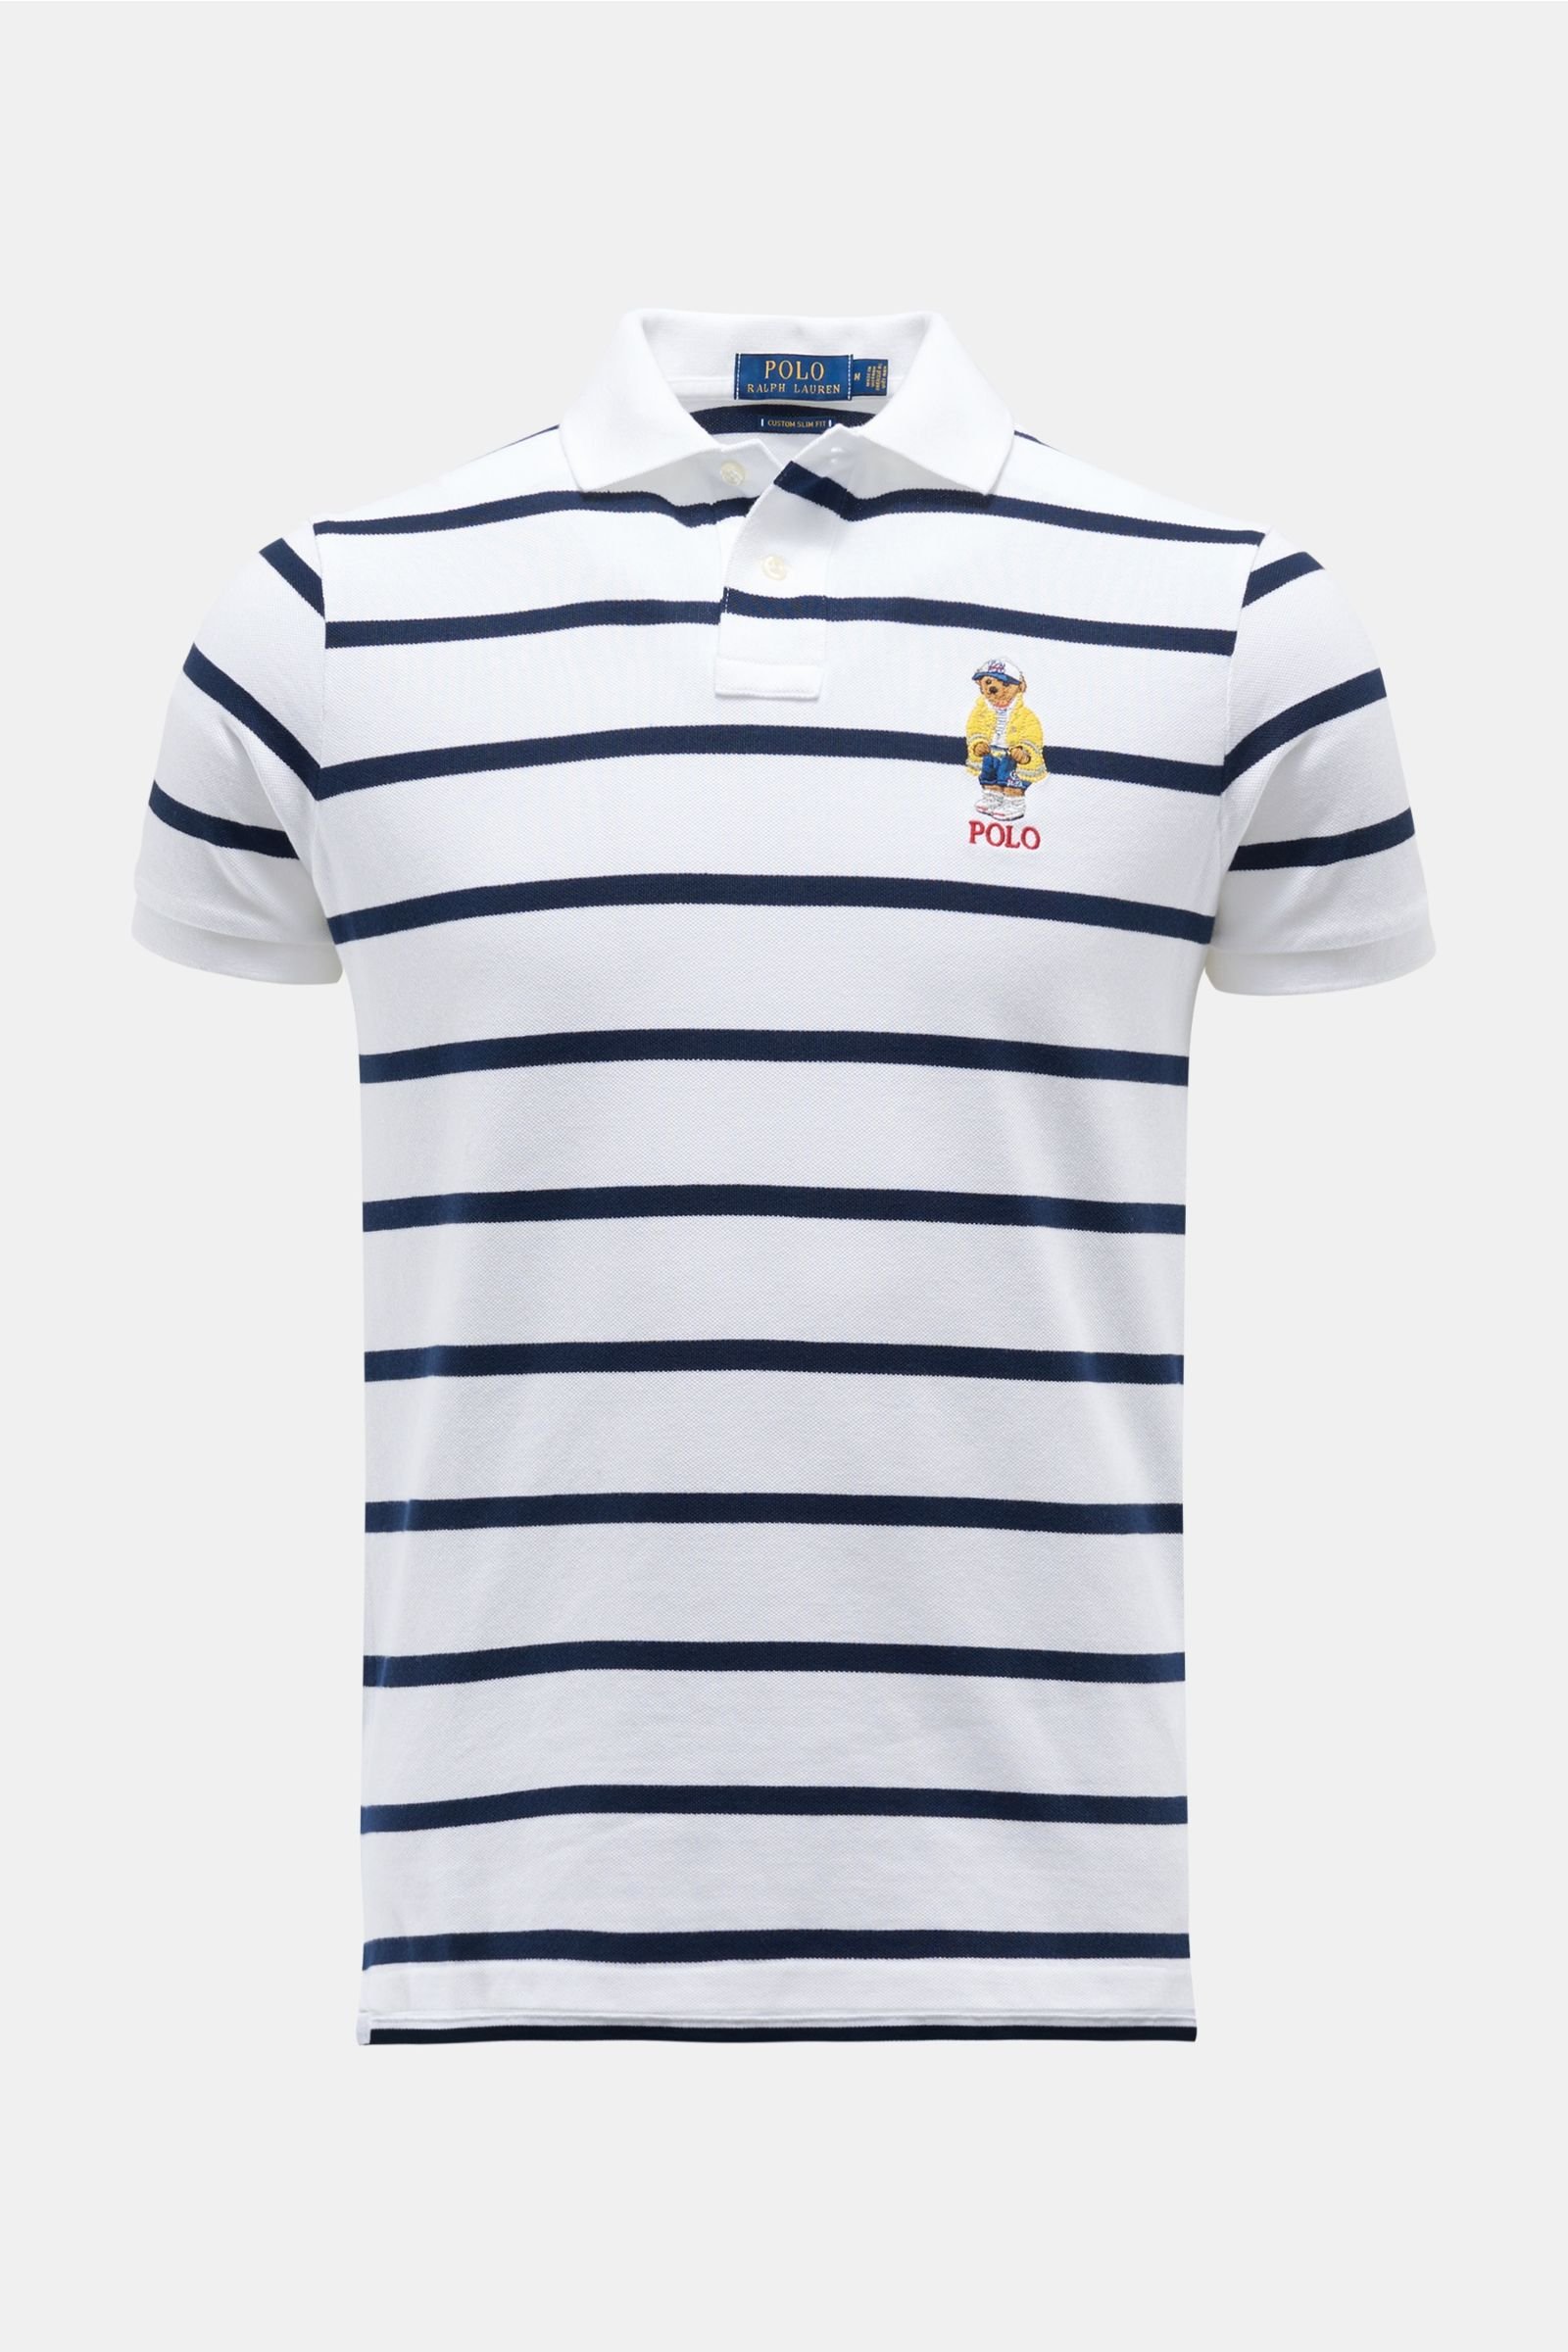 Polo shirt white/navy striped